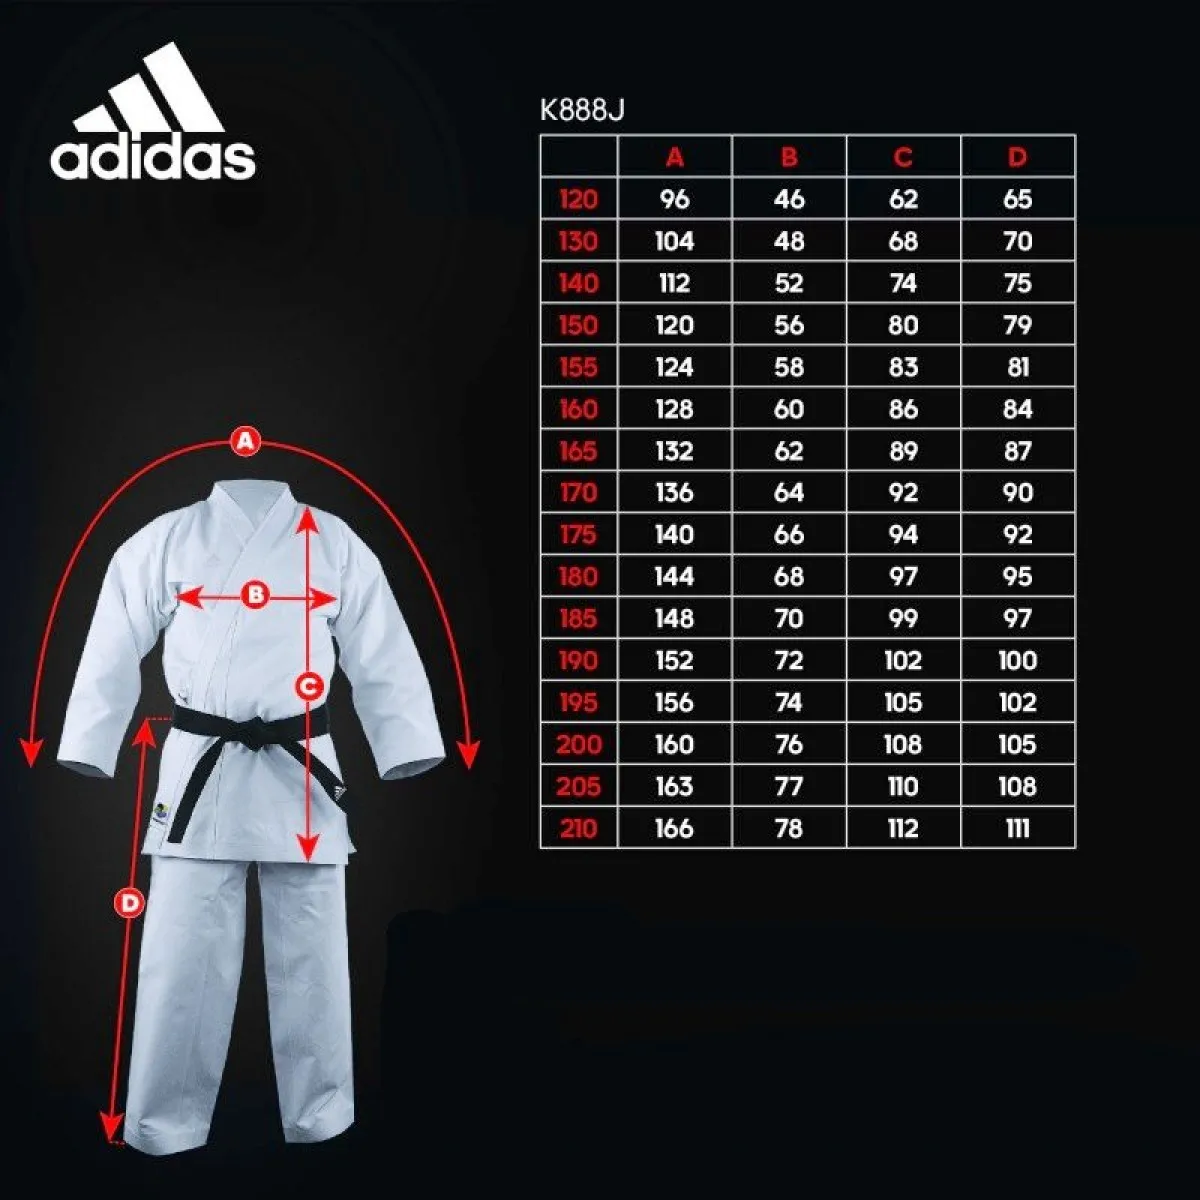 Adidas Kata traje de kárate Kigai japanese